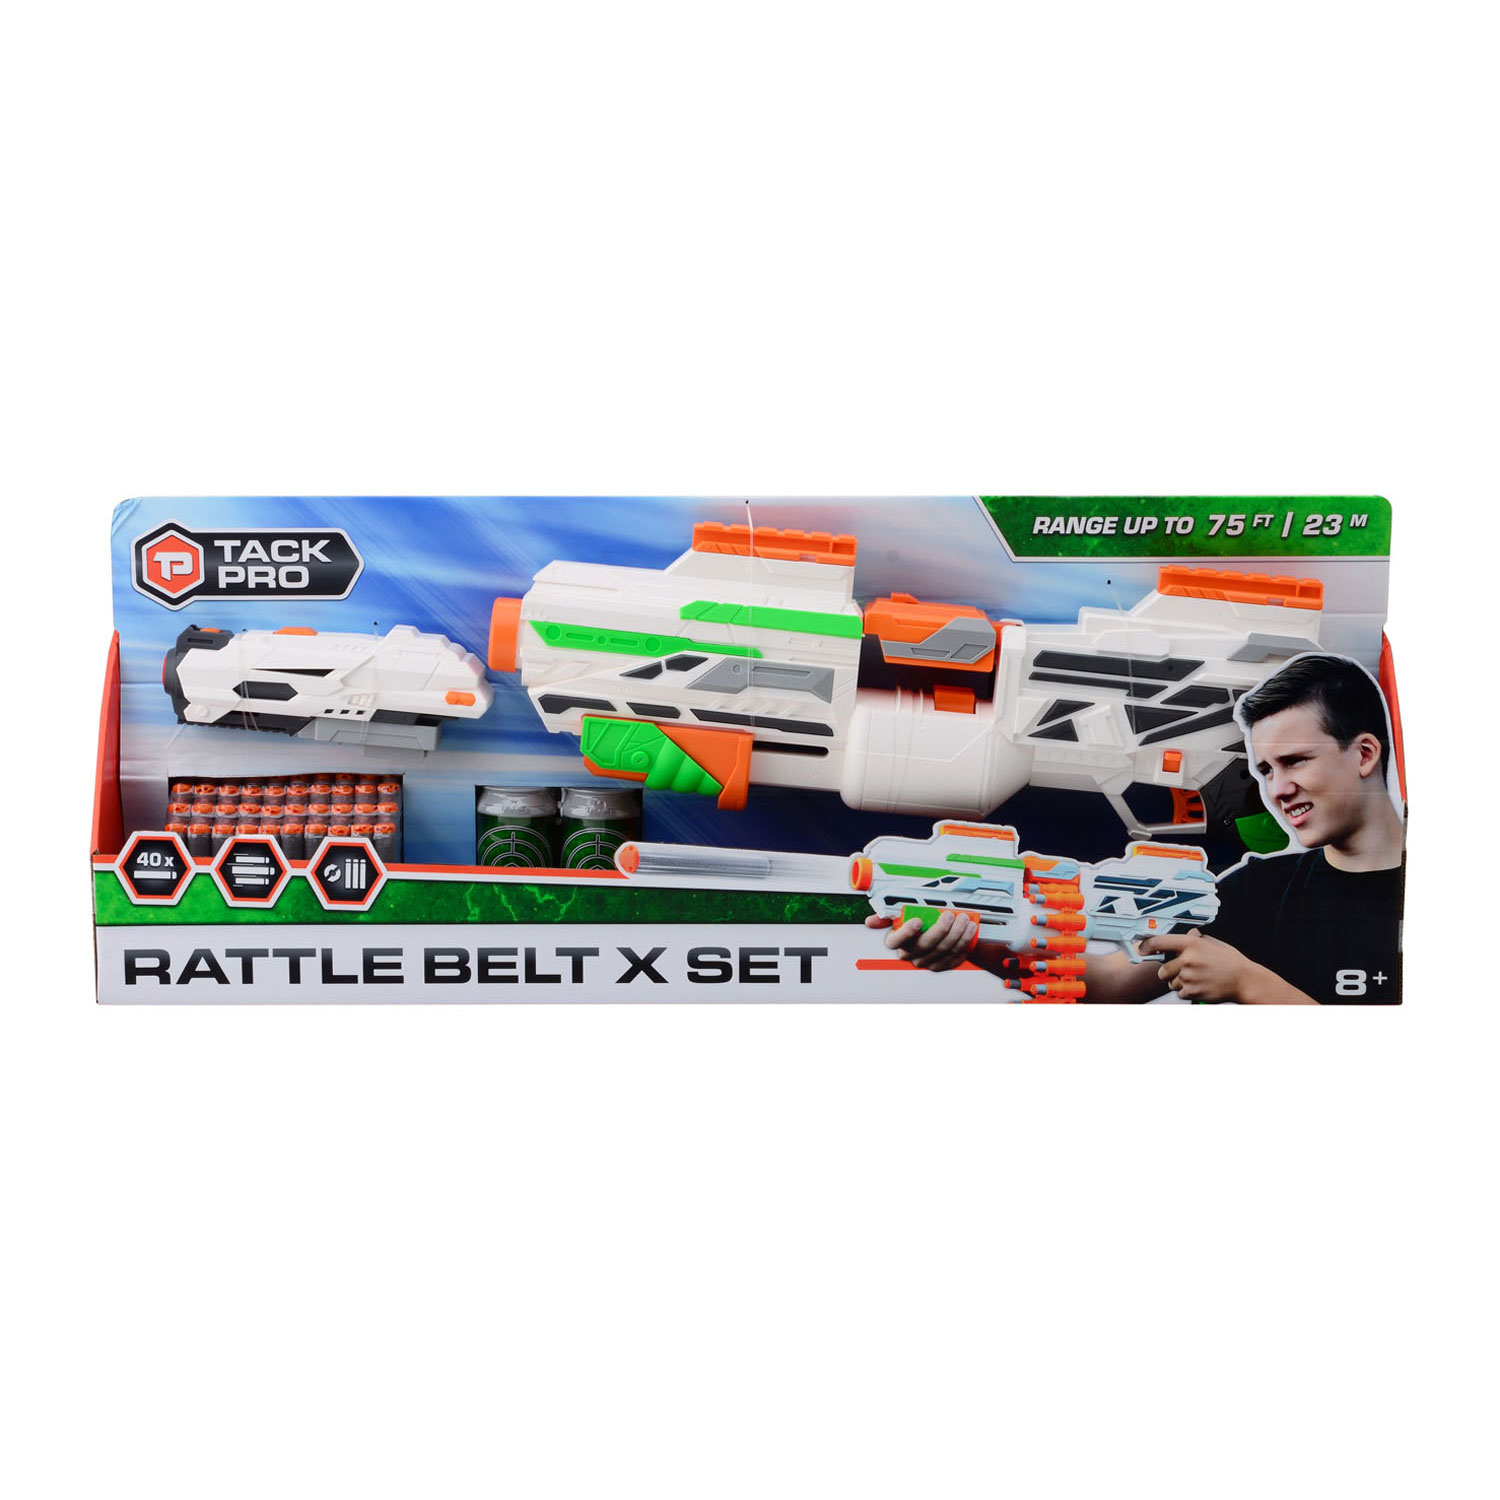 Tack Pro Rattle Belt X Set mit 40 Darts und Zubehör